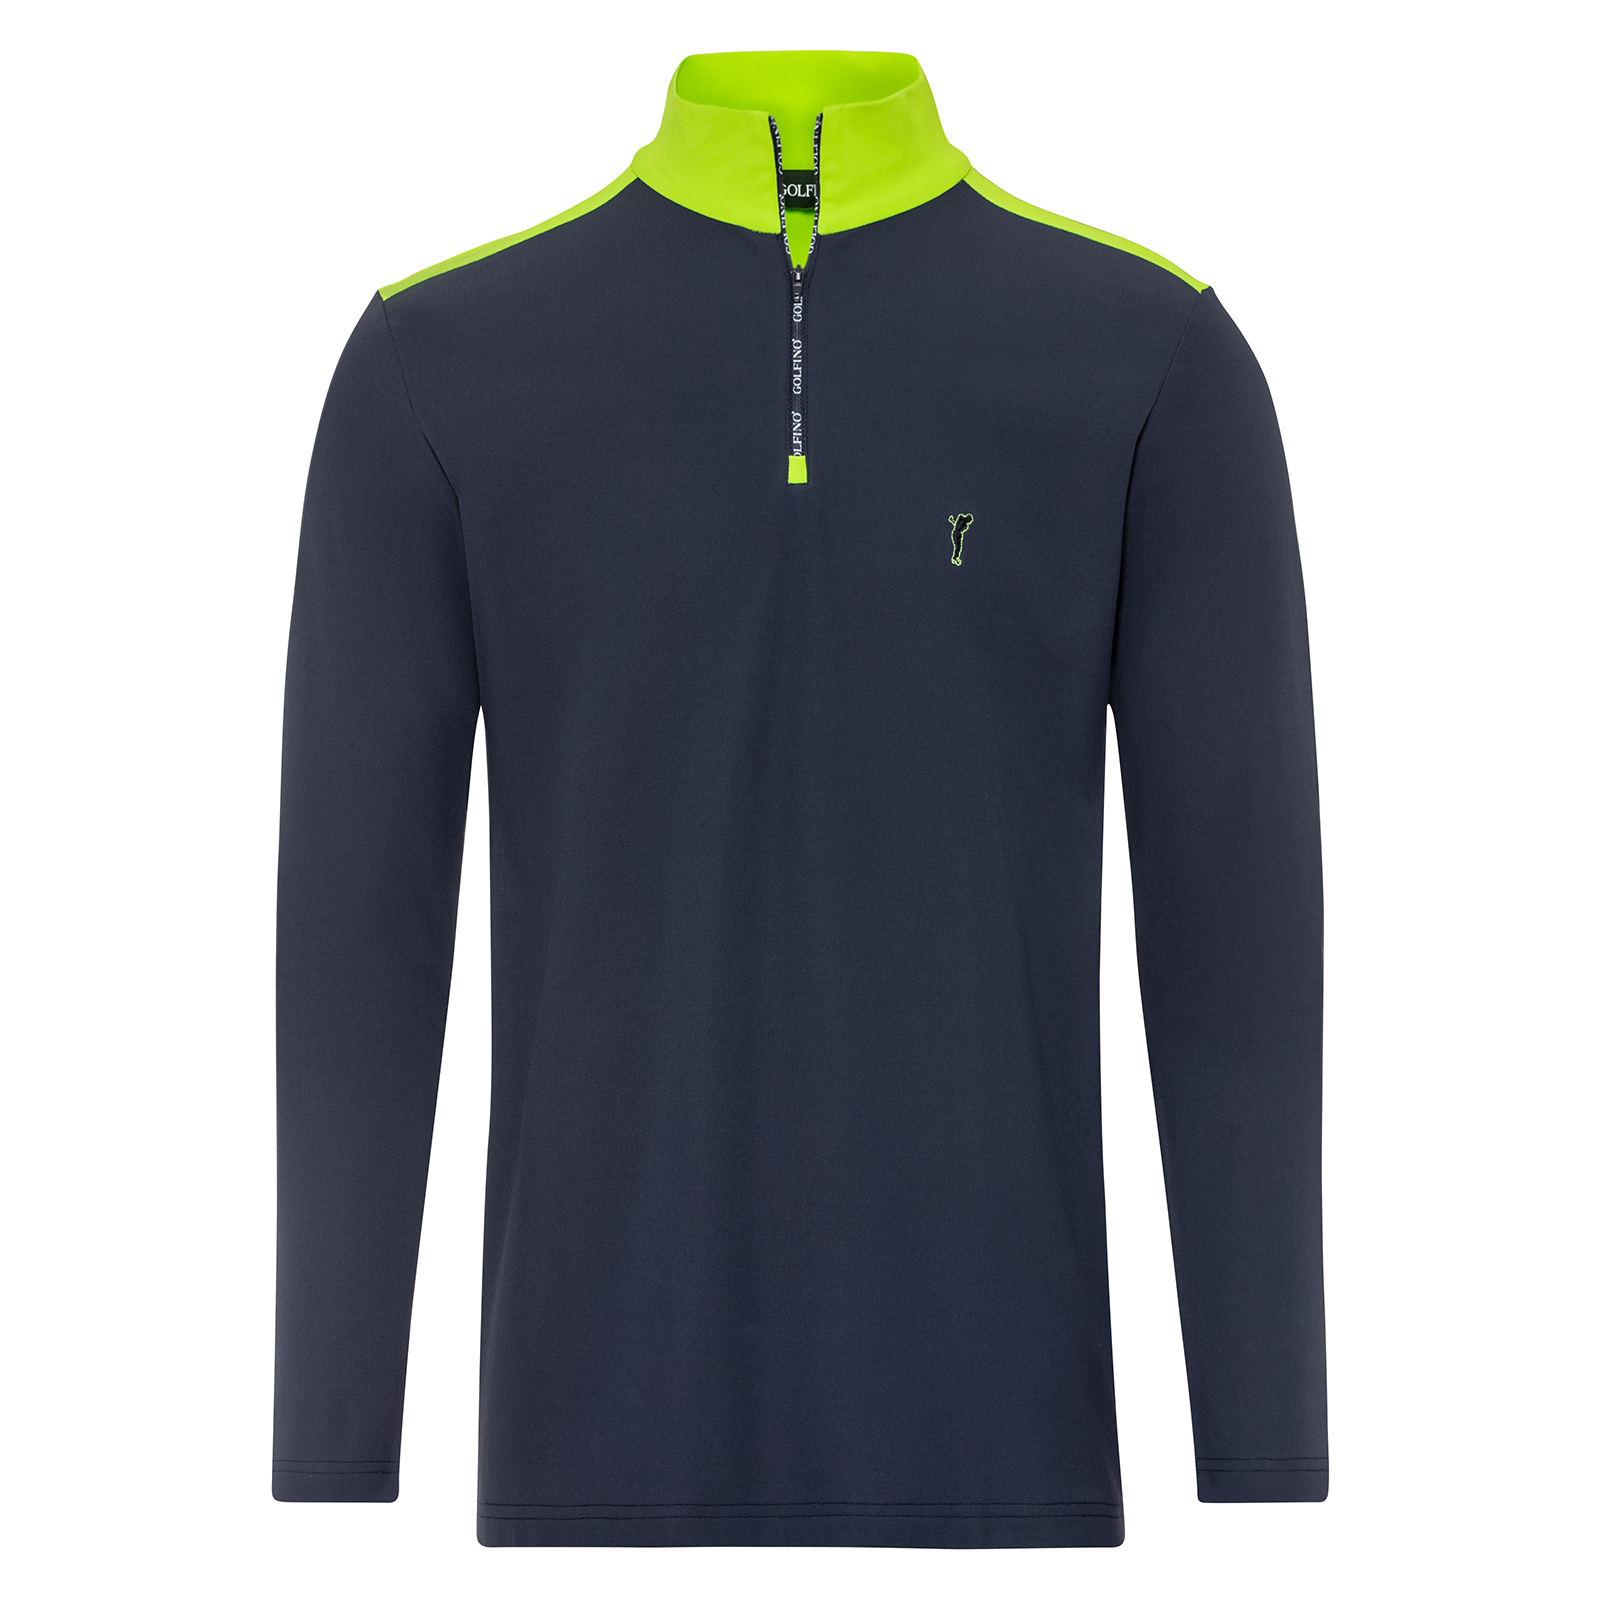 Men's comfortable half-zip golf shirt with fleece lining